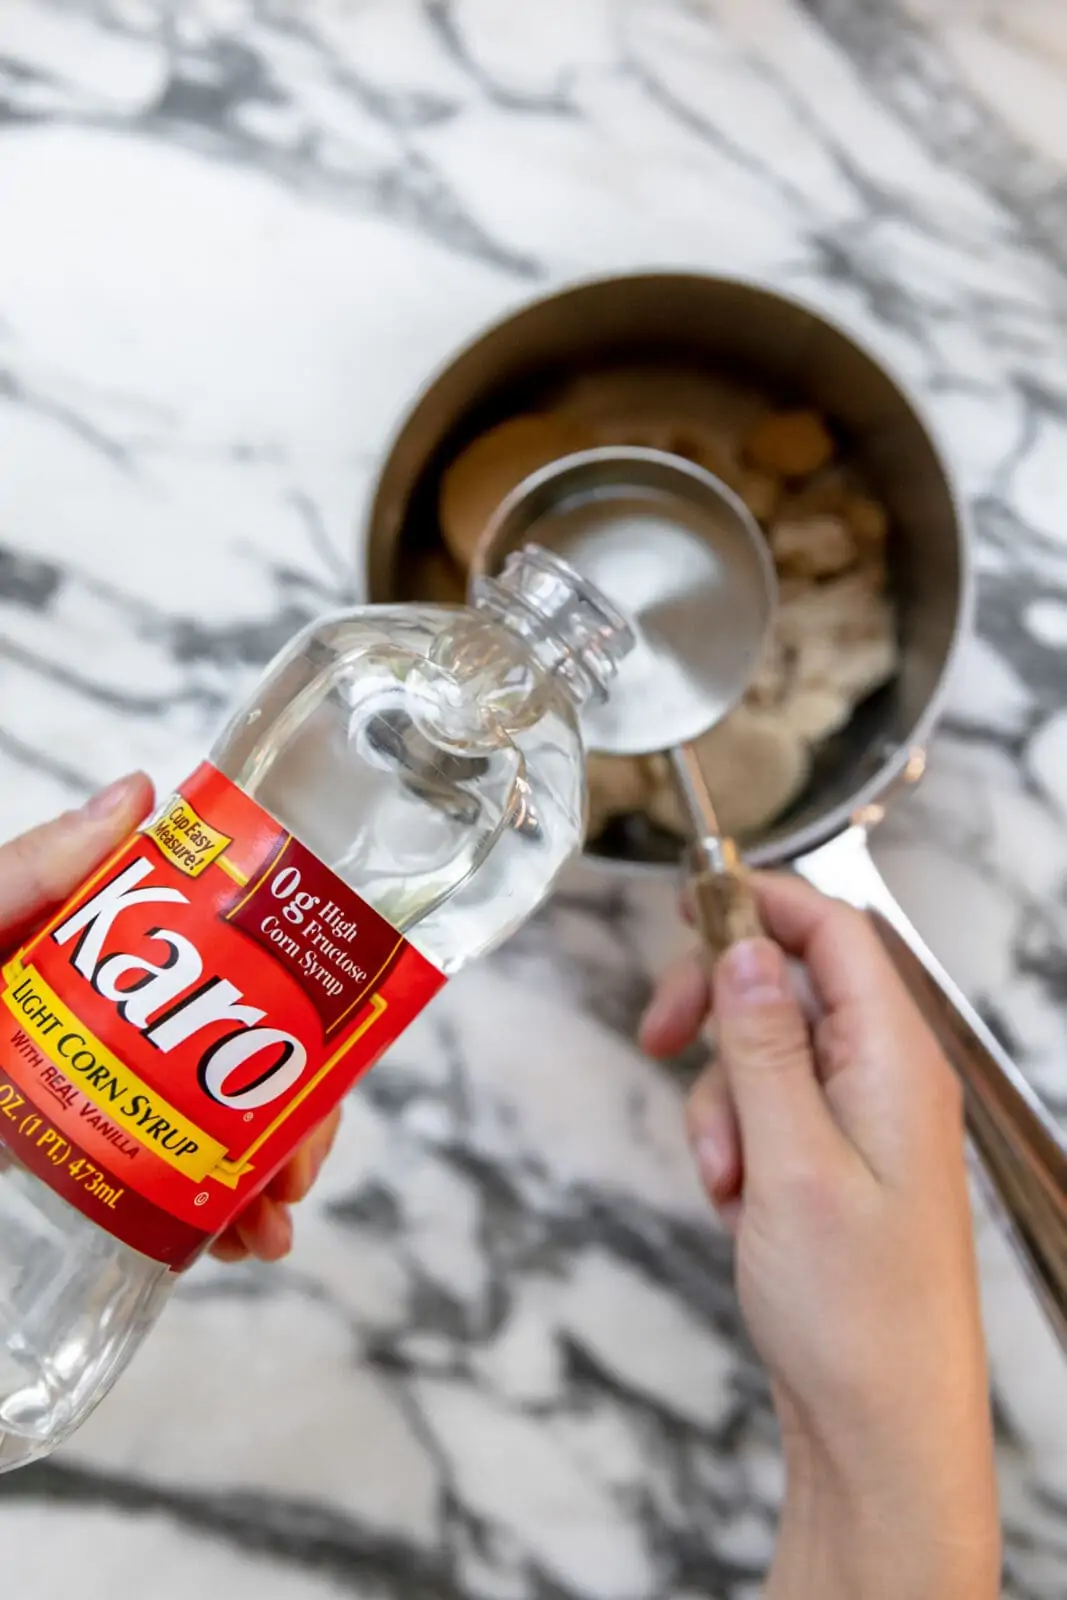 karo syrup to make homemade caramel